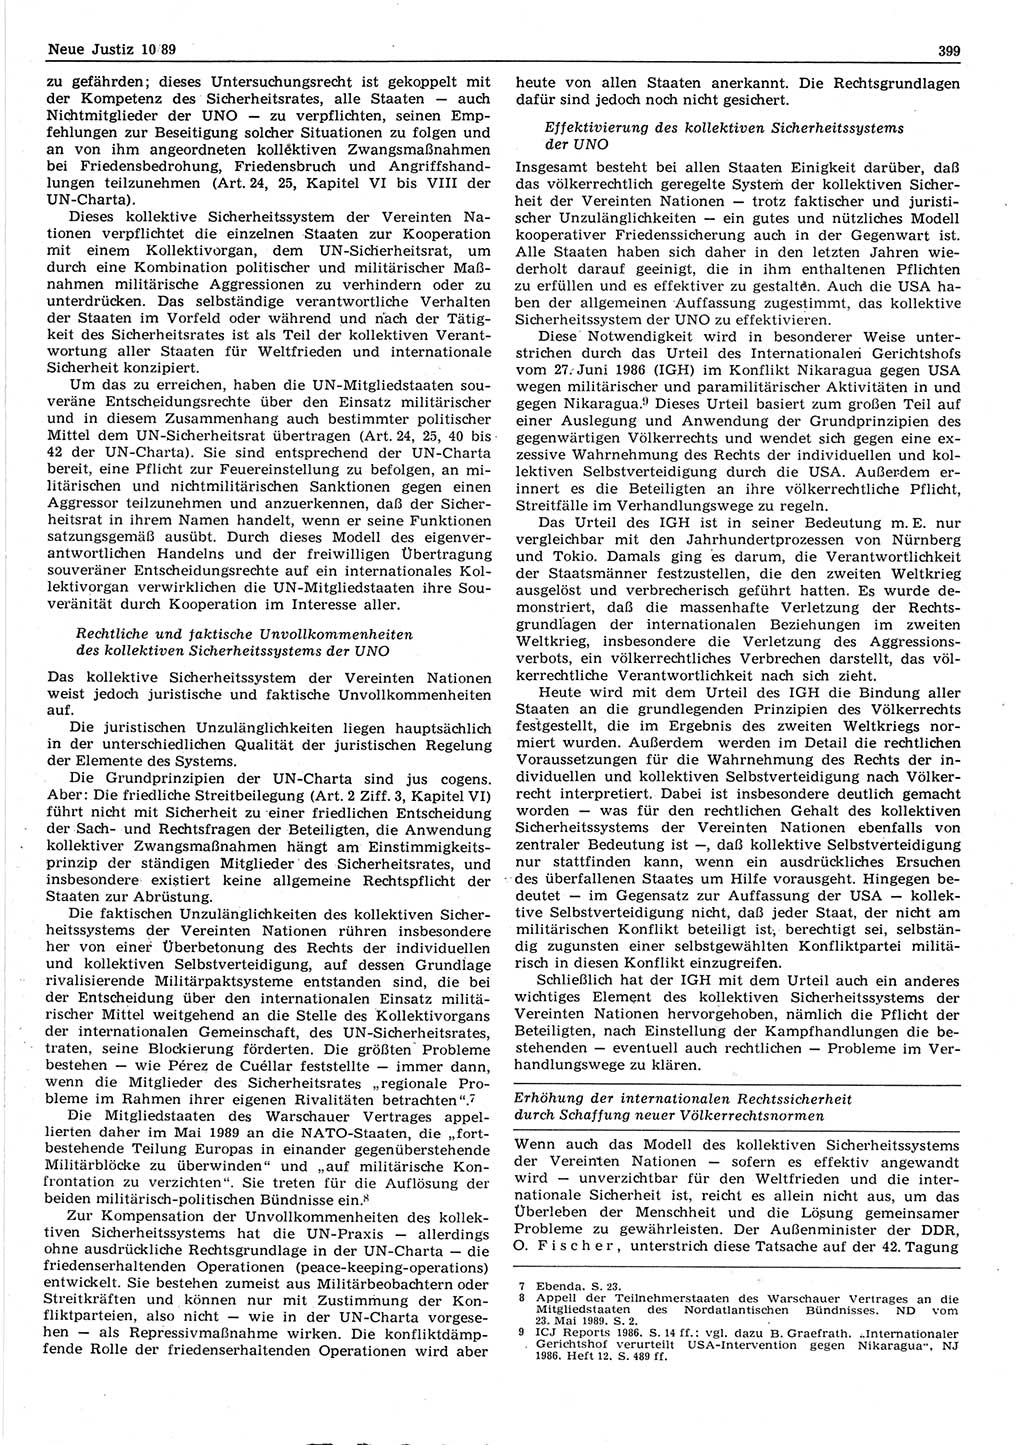 Neue Justiz (NJ), Zeitschrift für sozialistisches Recht und Gesetzlichkeit [Deutsche Demokratische Republik (DDR)], 43. Jahrgang 1989, Seite 399 (NJ DDR 1989, S. 399)